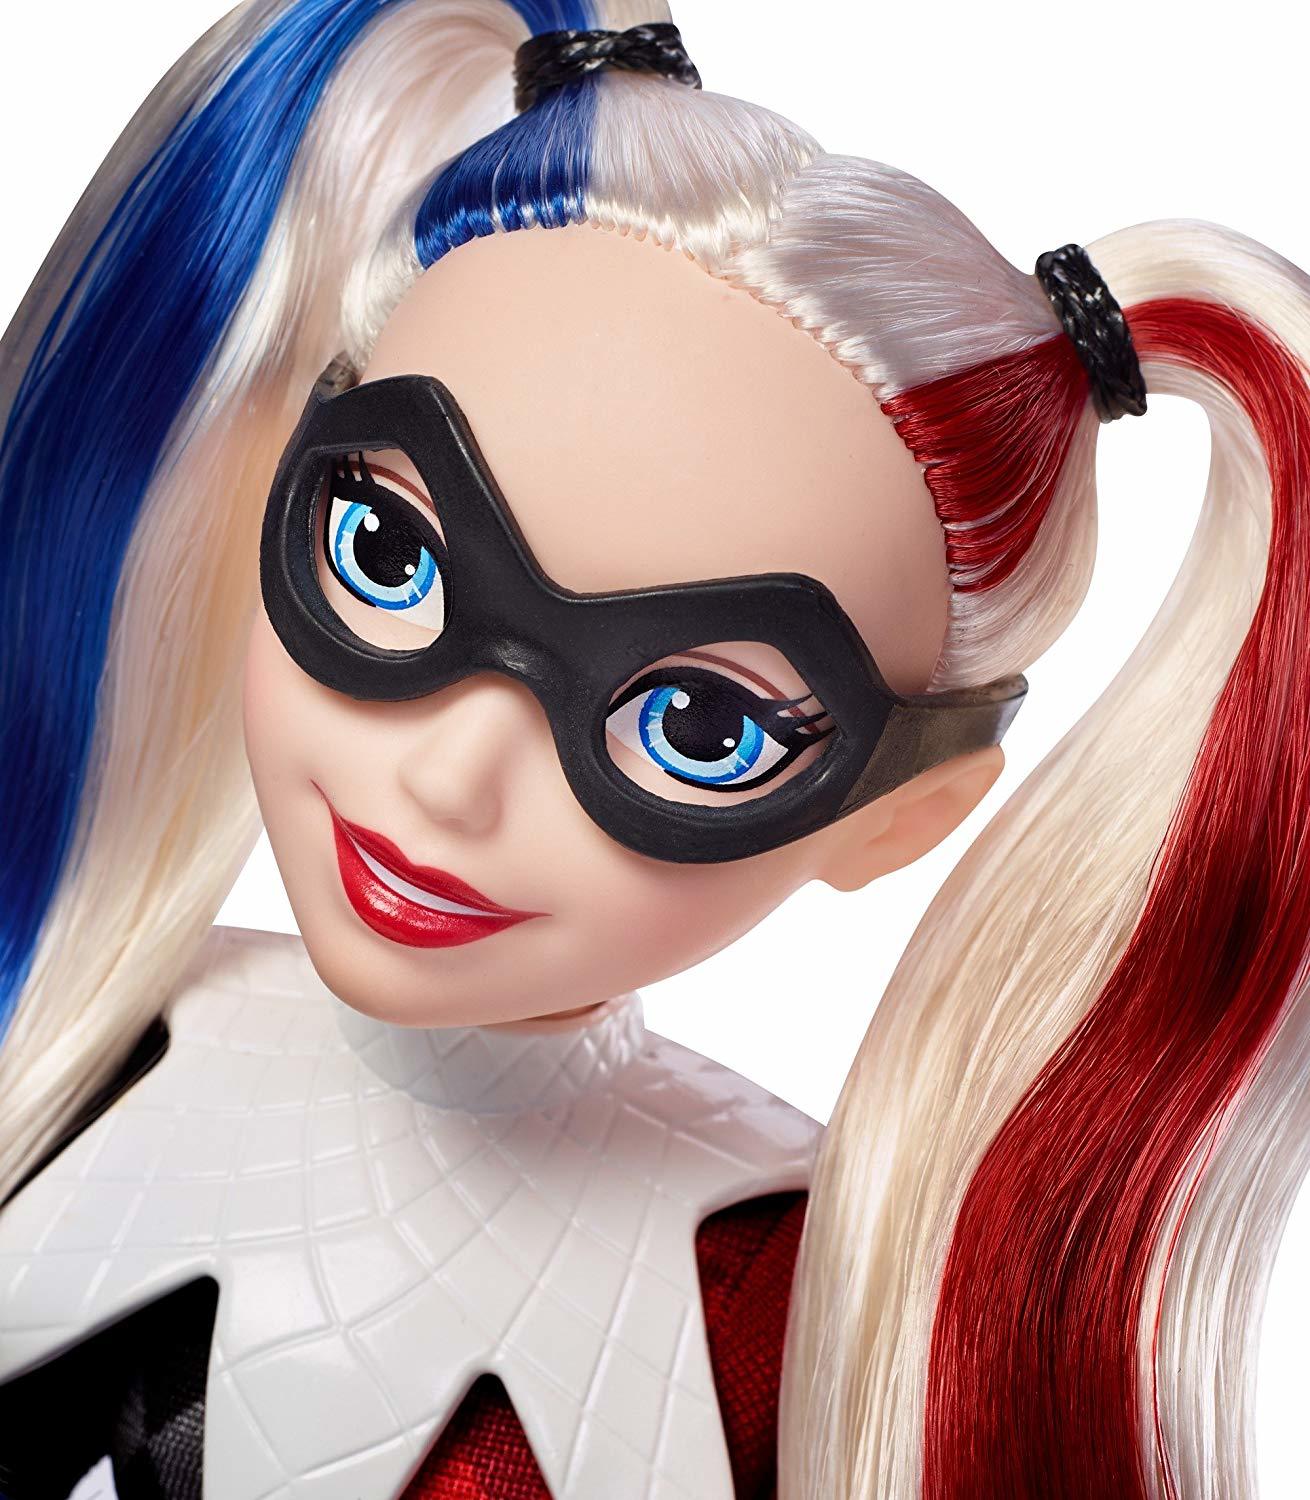 Doll quinn Harley Quinn